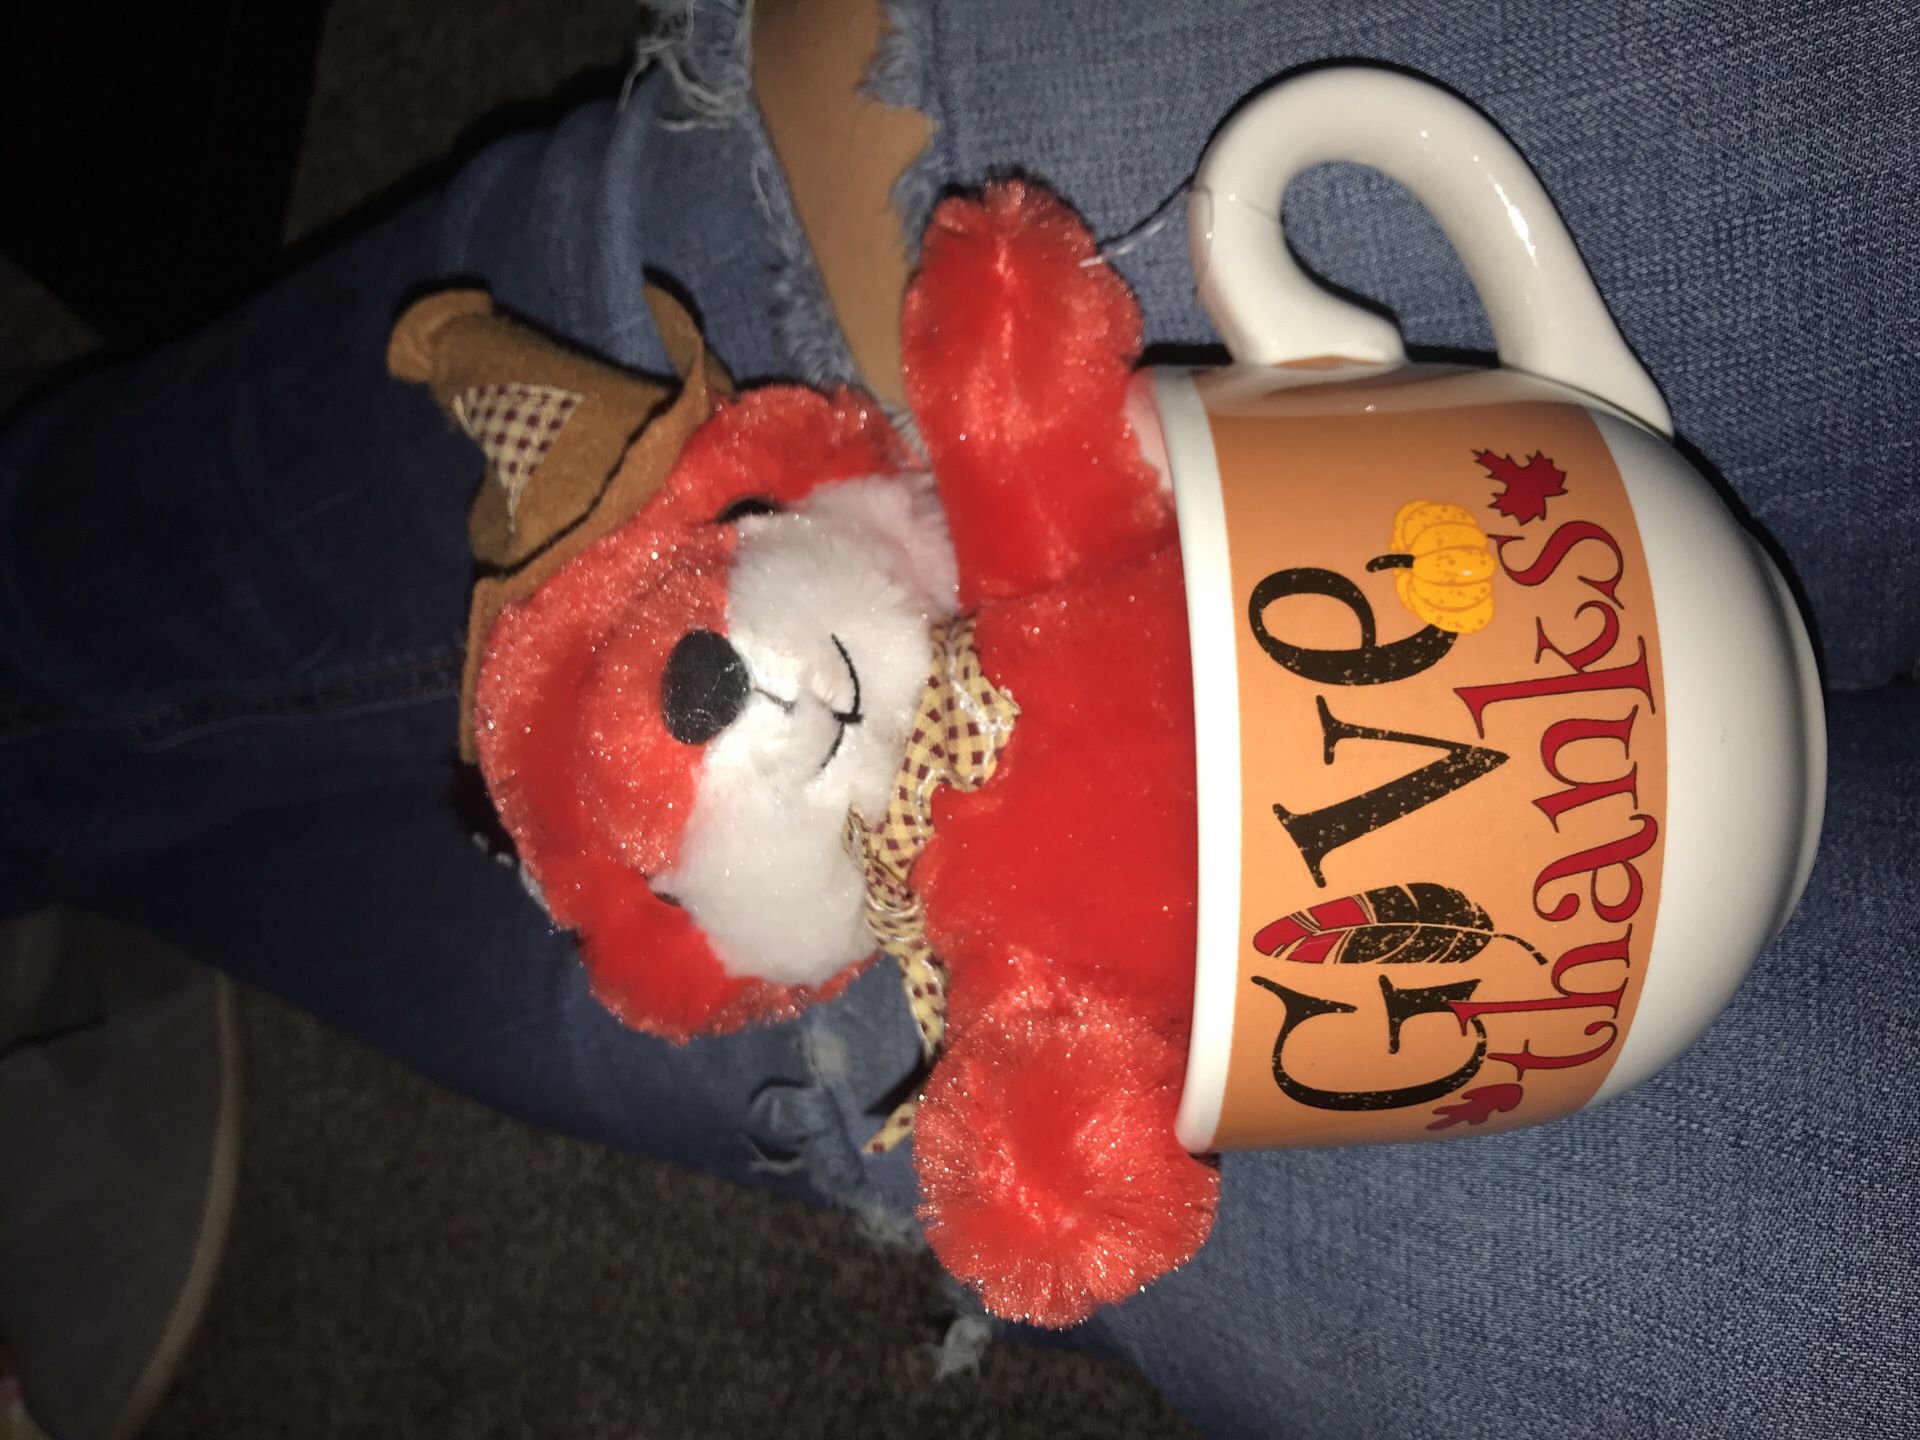 Thanksgiving day Stuffed animal and a mug